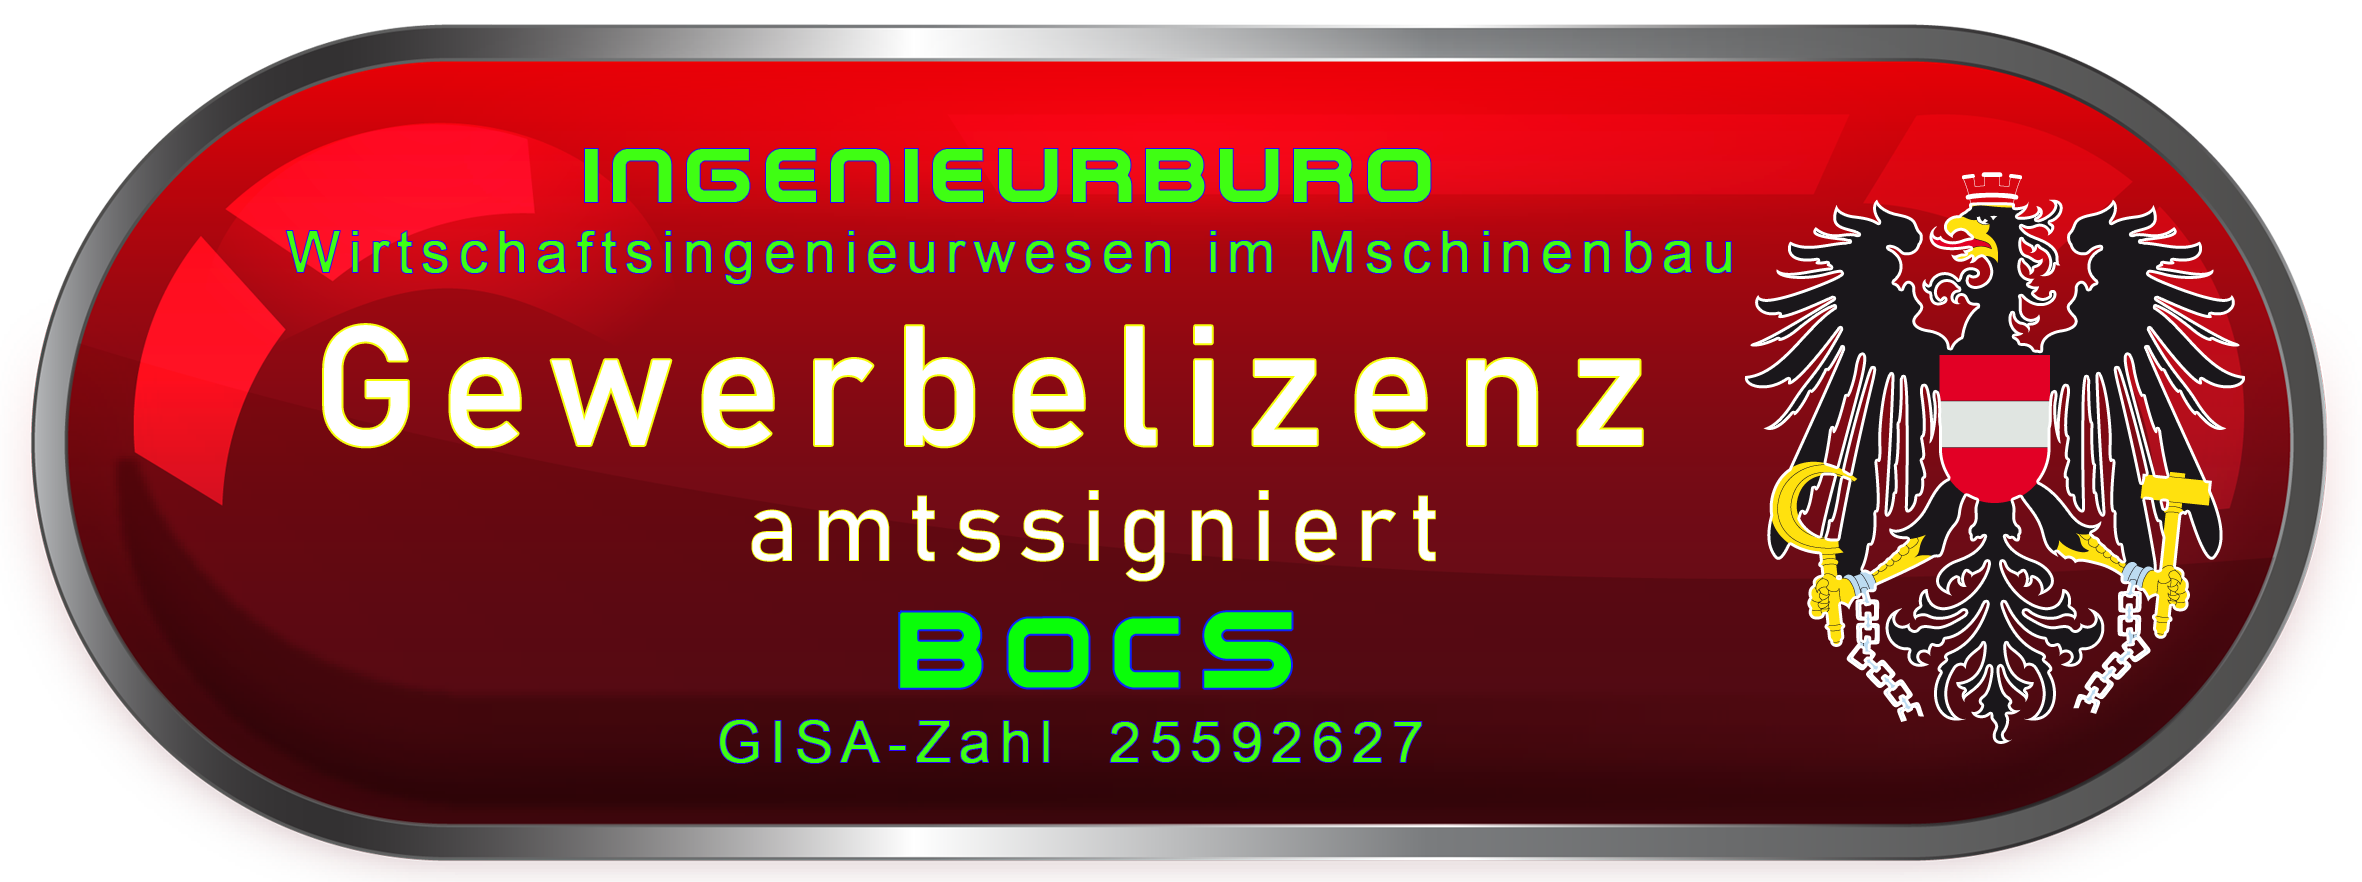 bocs-gewerbelizenz-ingenieurbuero-2.png